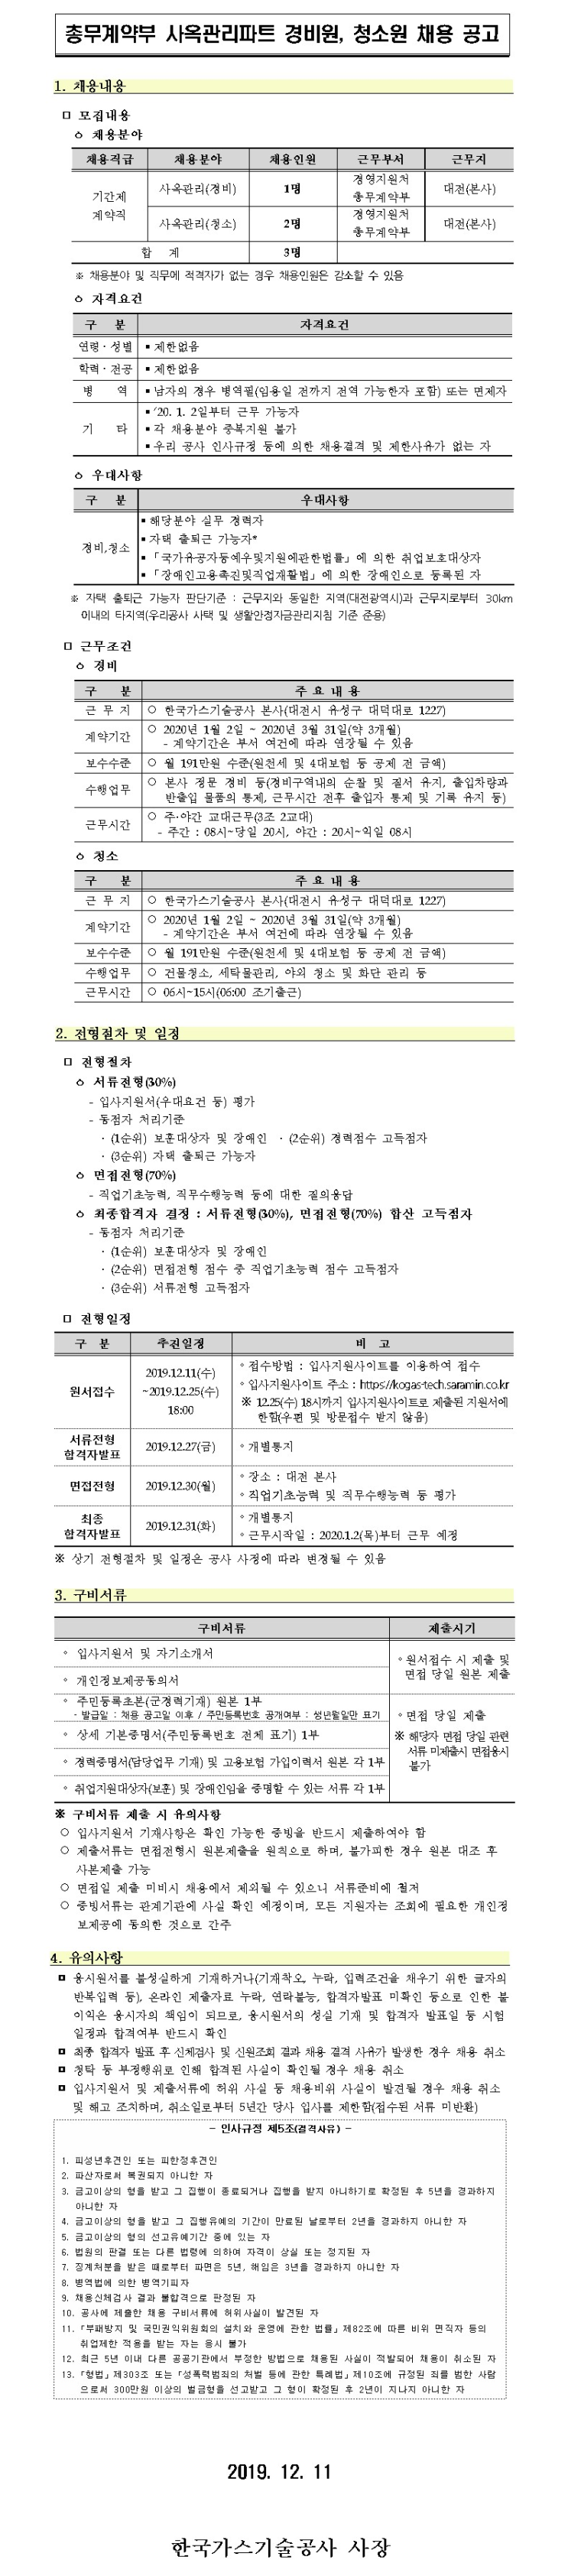 [채용][한국가스기술공사] 총무계약부 사옥관리파트 경비원, 청소원 계약직 채용공고